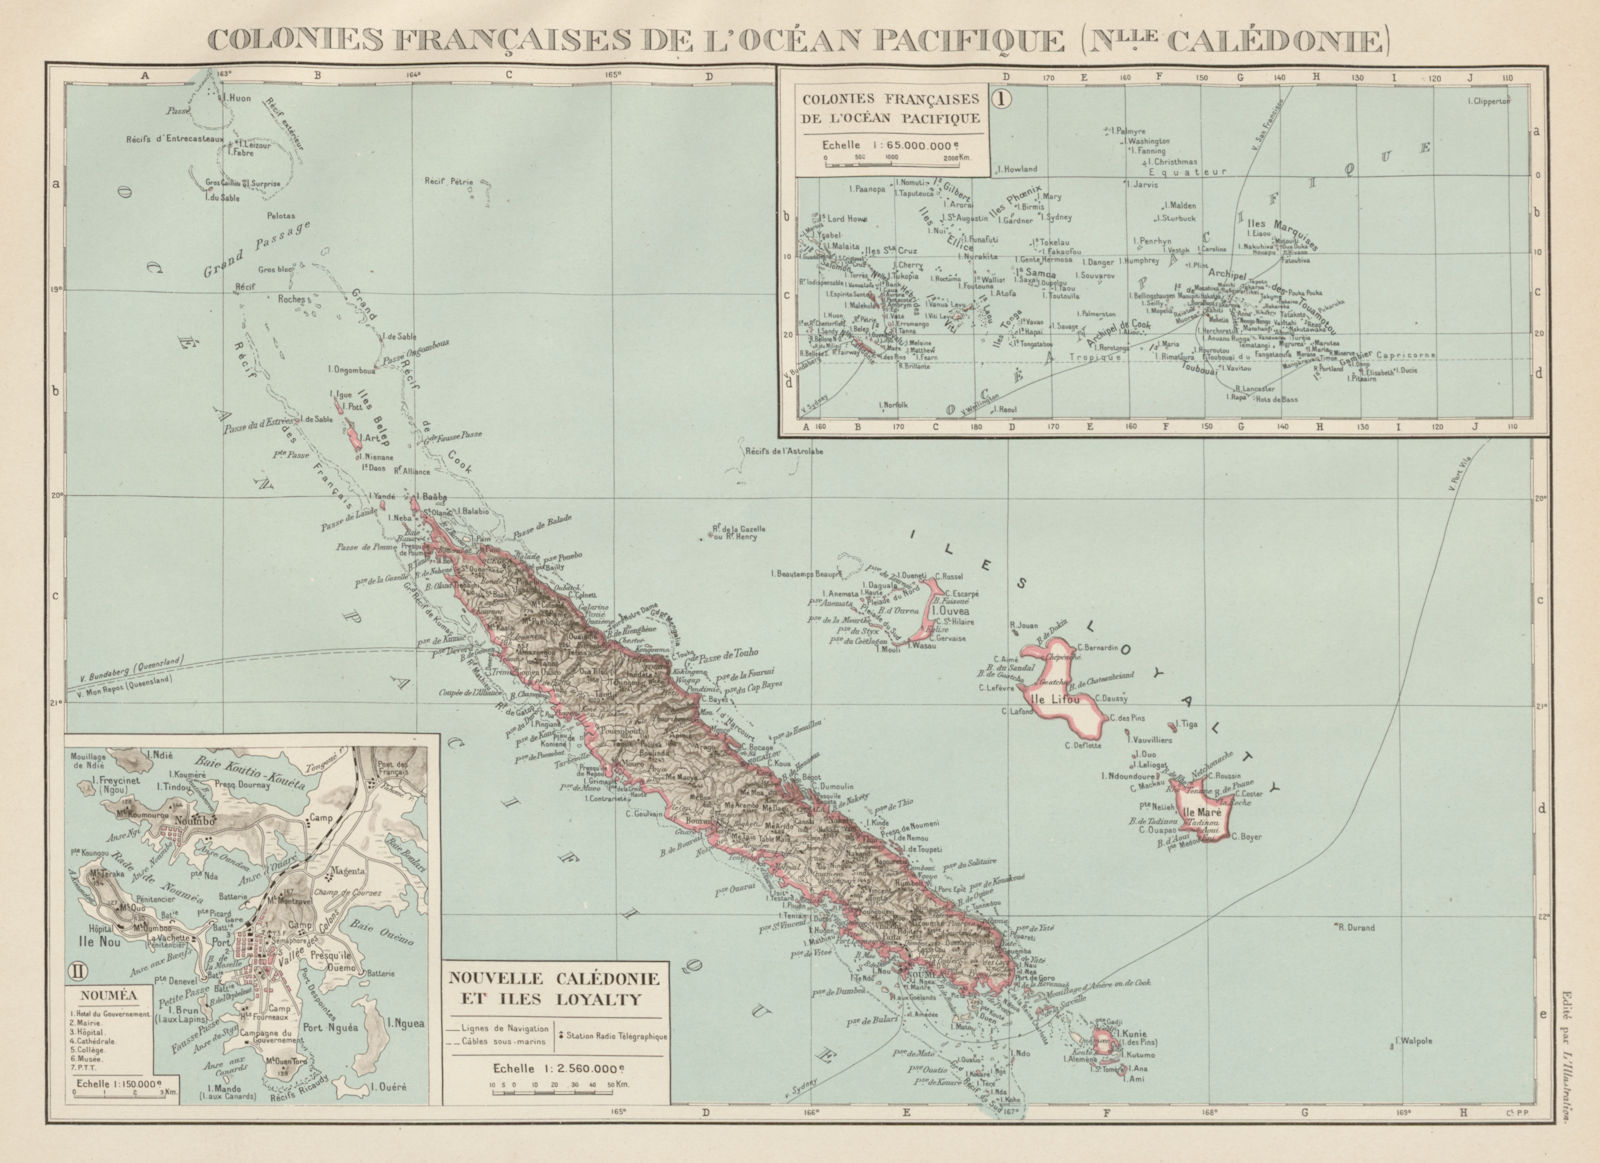 NEW CALEDONIA. Nouvelle Caledonie. Loyalty Islands/Îles Loyauté. Nouméa 1929 map